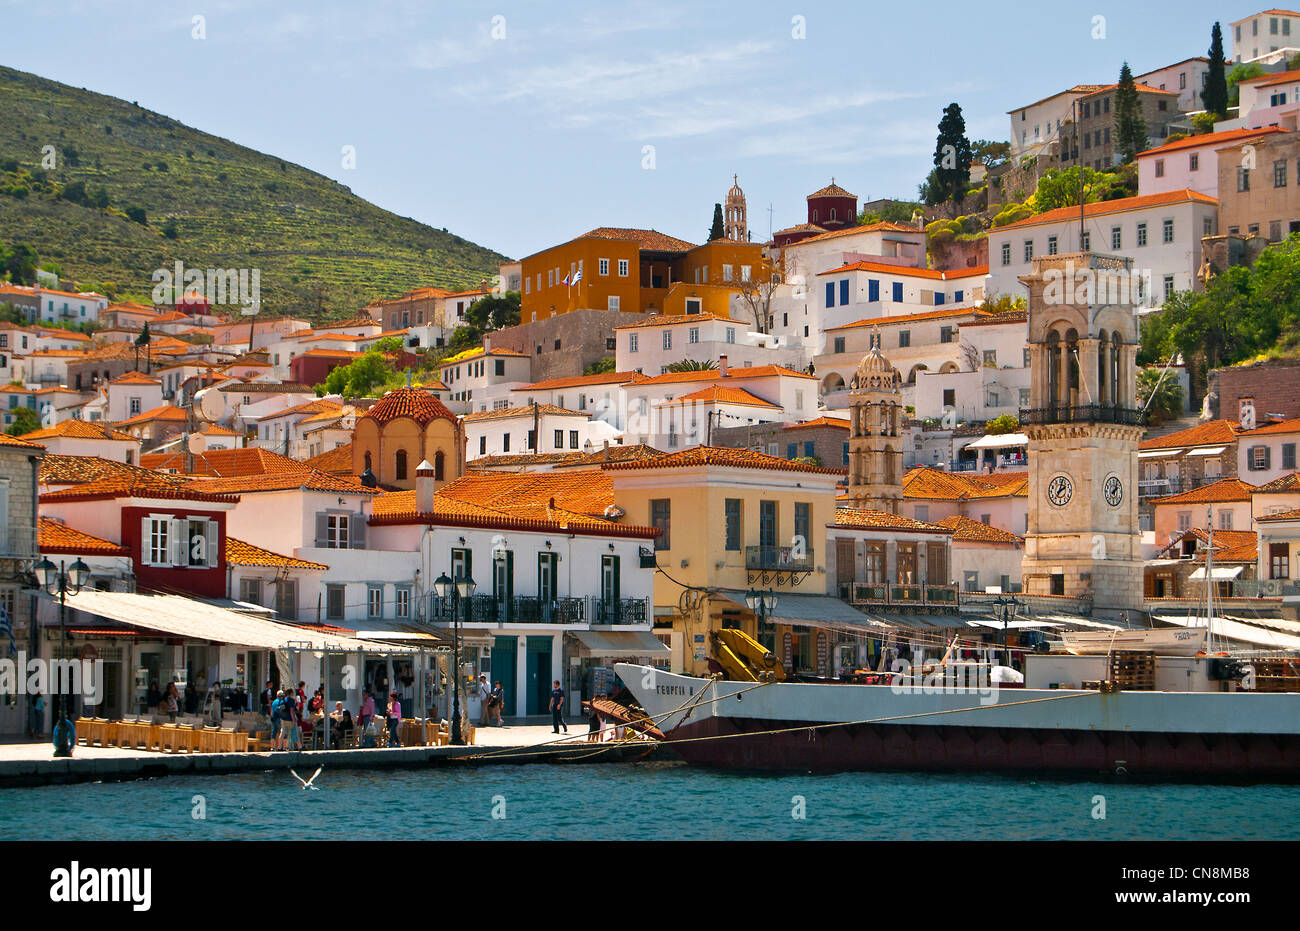 Hydra, isole del golfo Saronico, Grecia- vista del porto e della città Foto Stock